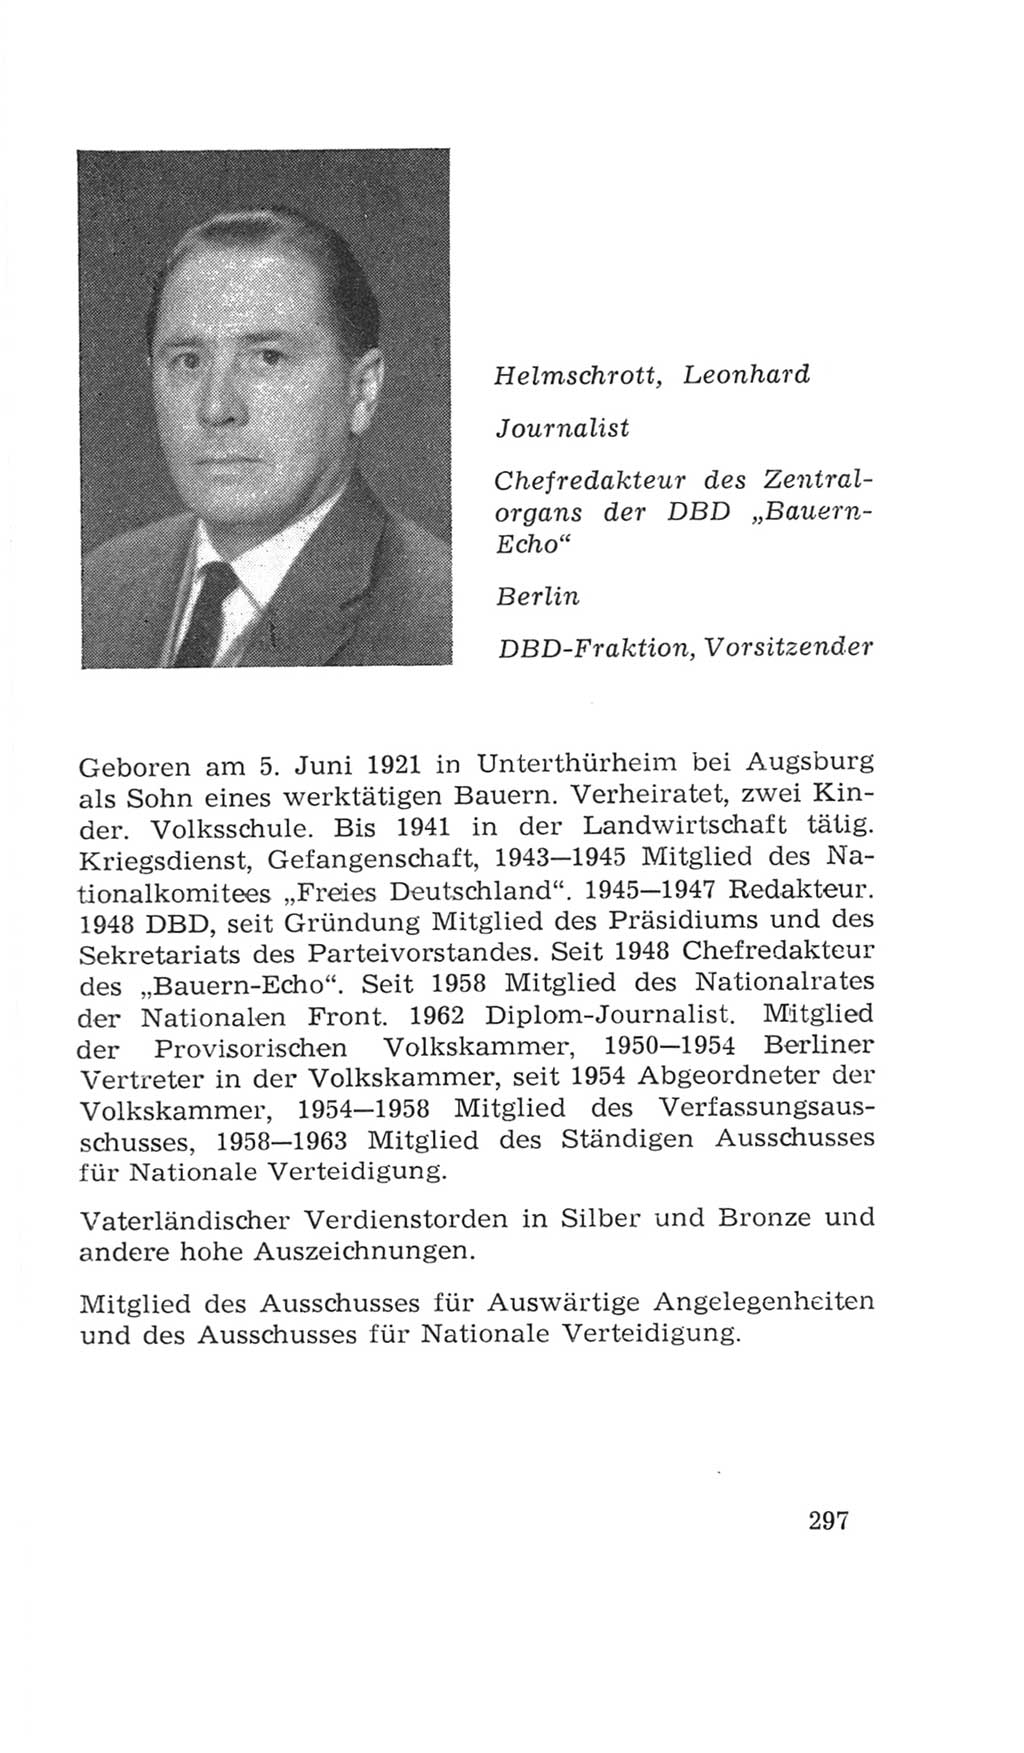 Volkskammer (VK) der Deutschen Demokratischen Republik (DDR), 4. Wahlperiode 1963-1967, Seite 297 (VK. DDR 4. WP. 1963-1967, S. 297)